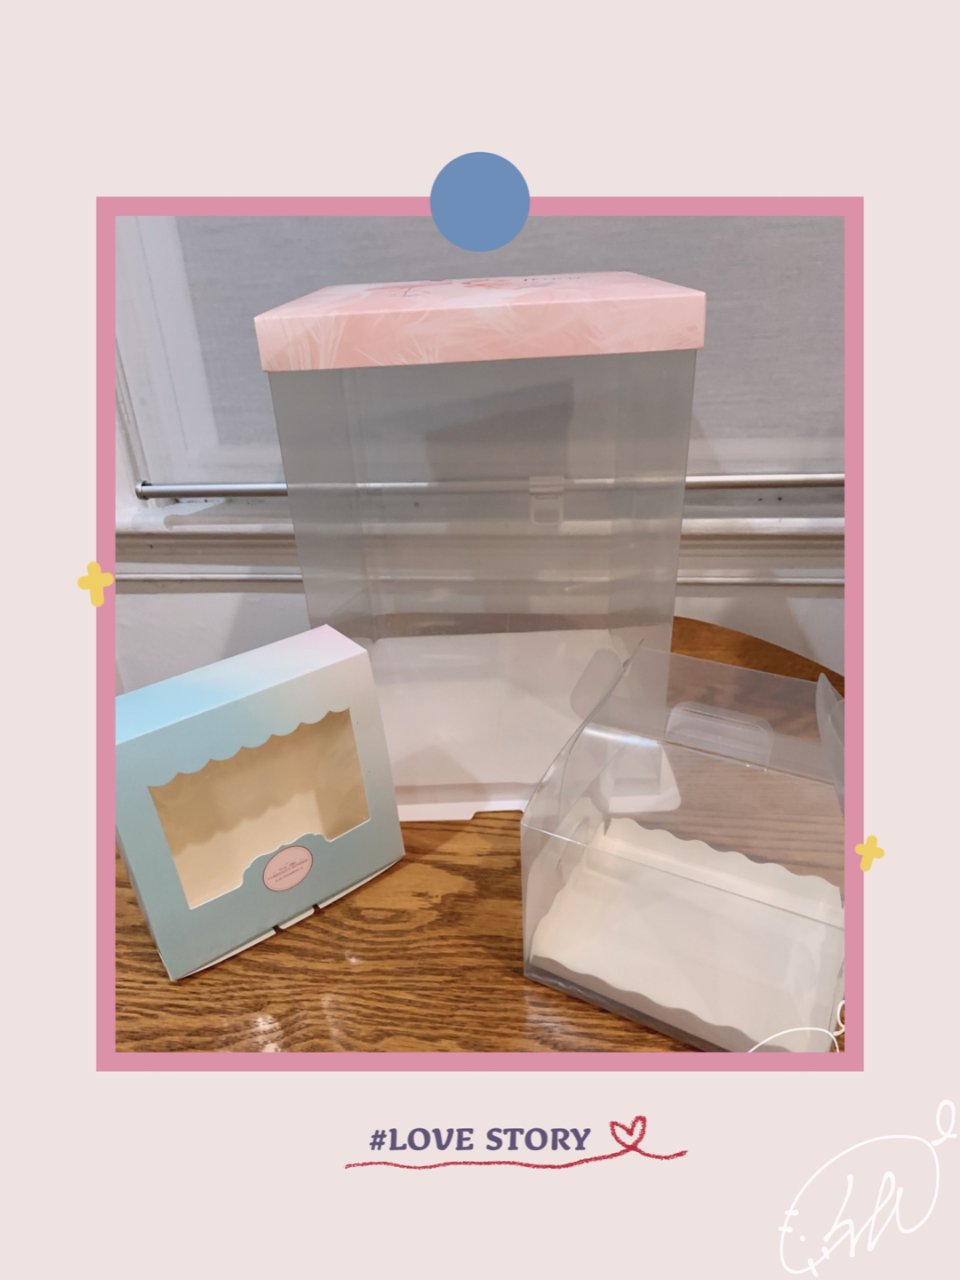 【嗨-5】🍑宝～烘焙的包装盒/袋...